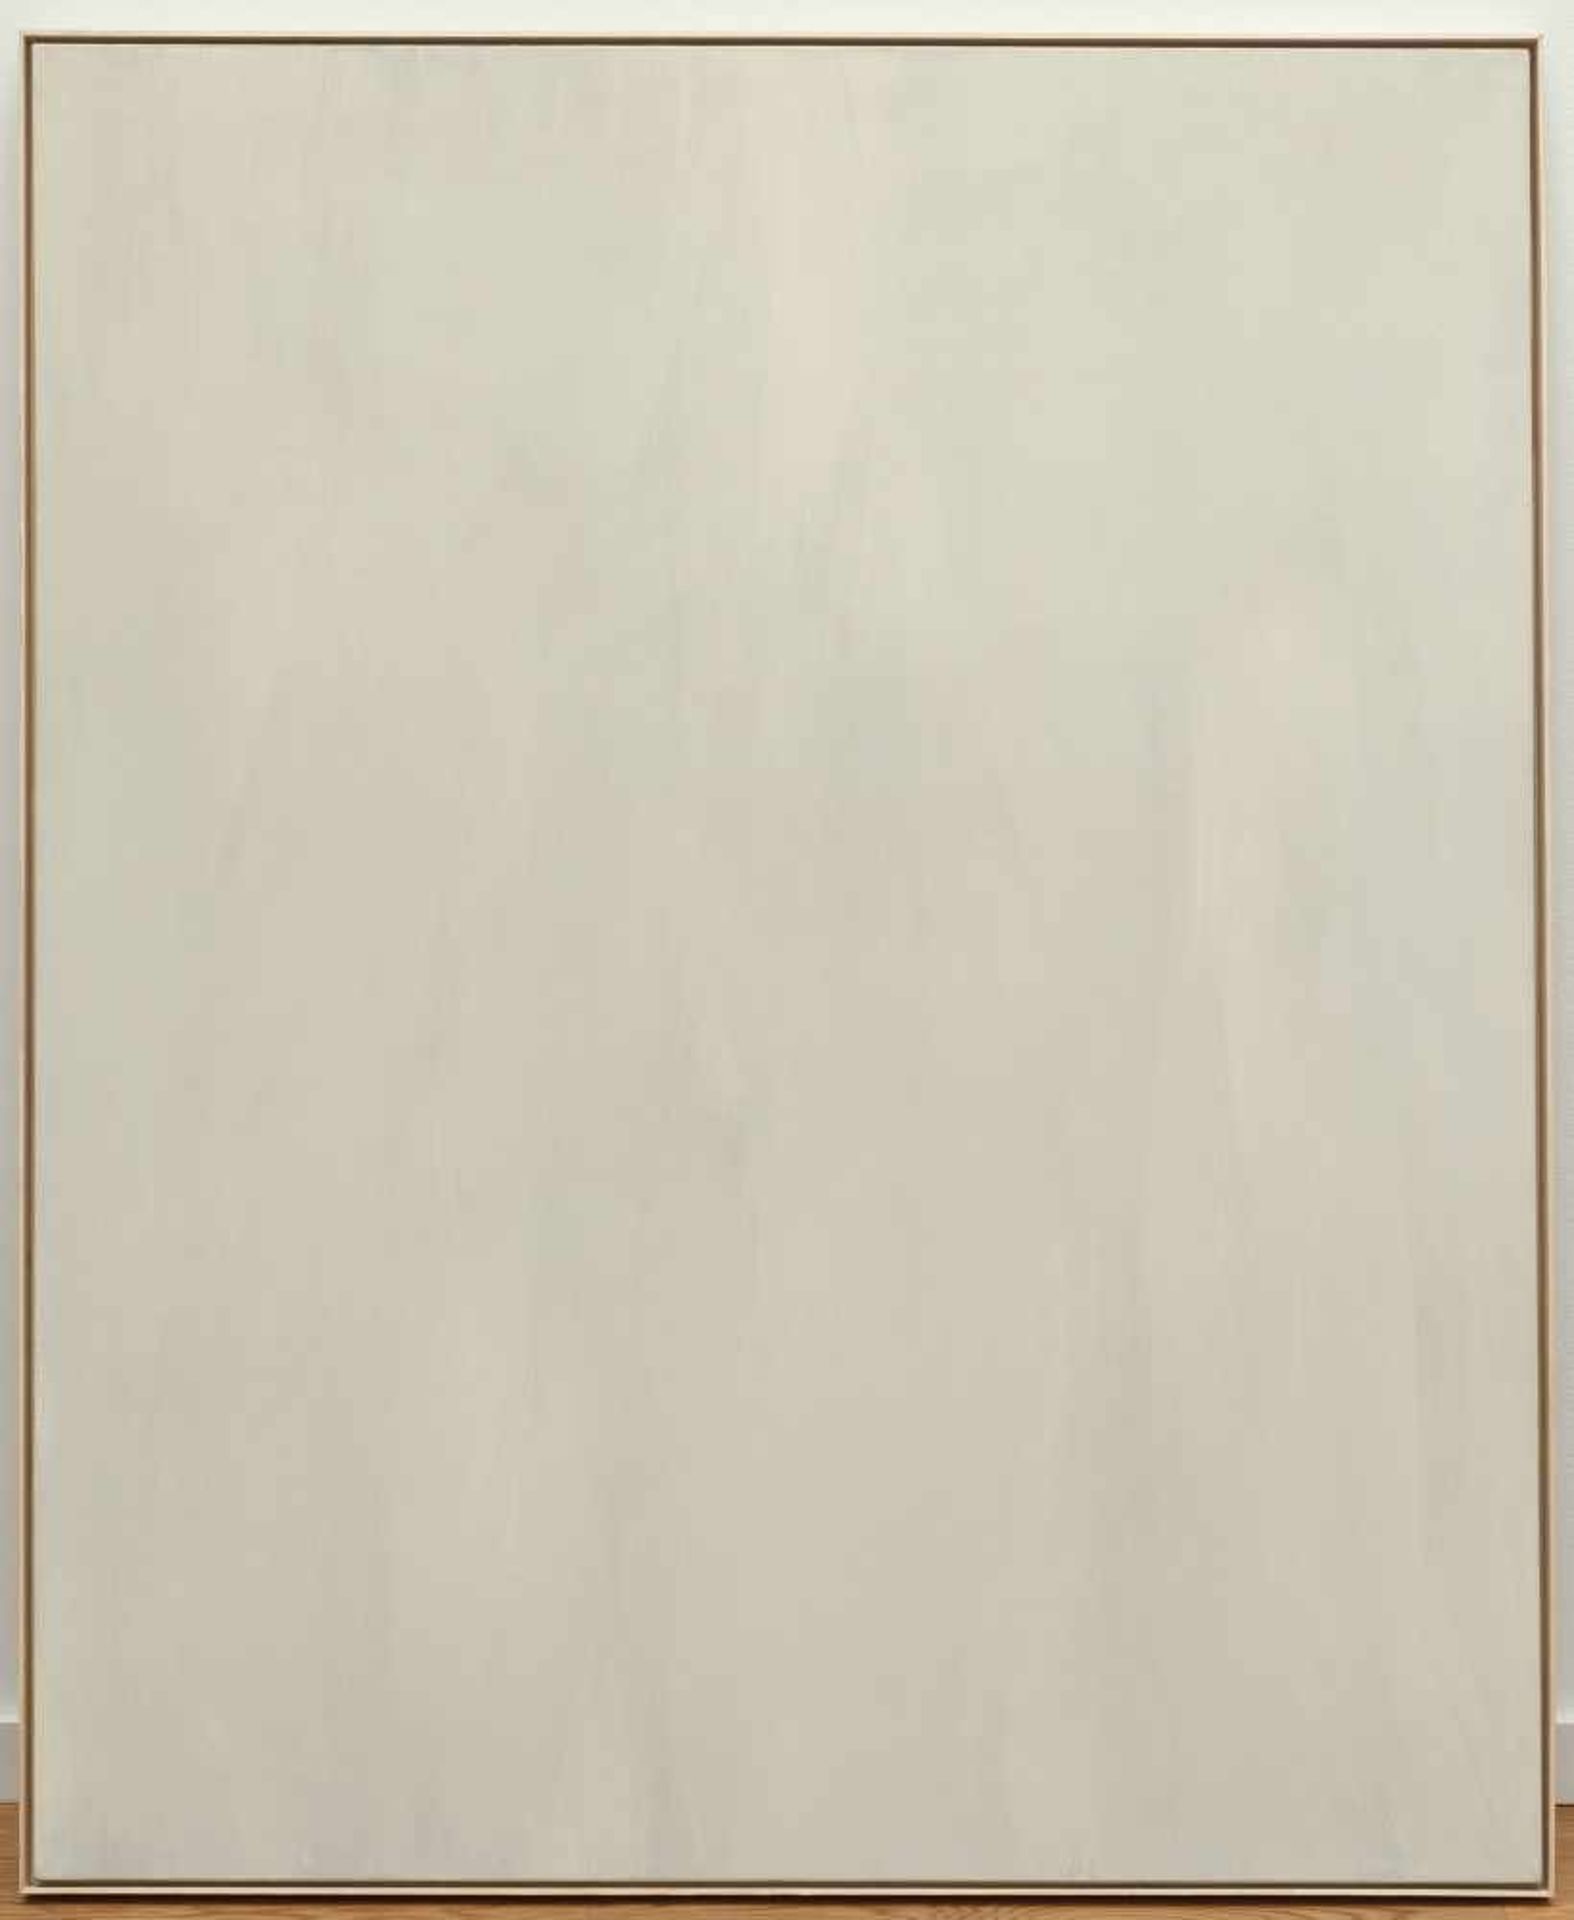 Raimund Girke Ohne Titel Öl auf Leinwand. (19)76. Ca. 160 x 130 cm. Verso auf der umgeschlagenen - Image 2 of 3